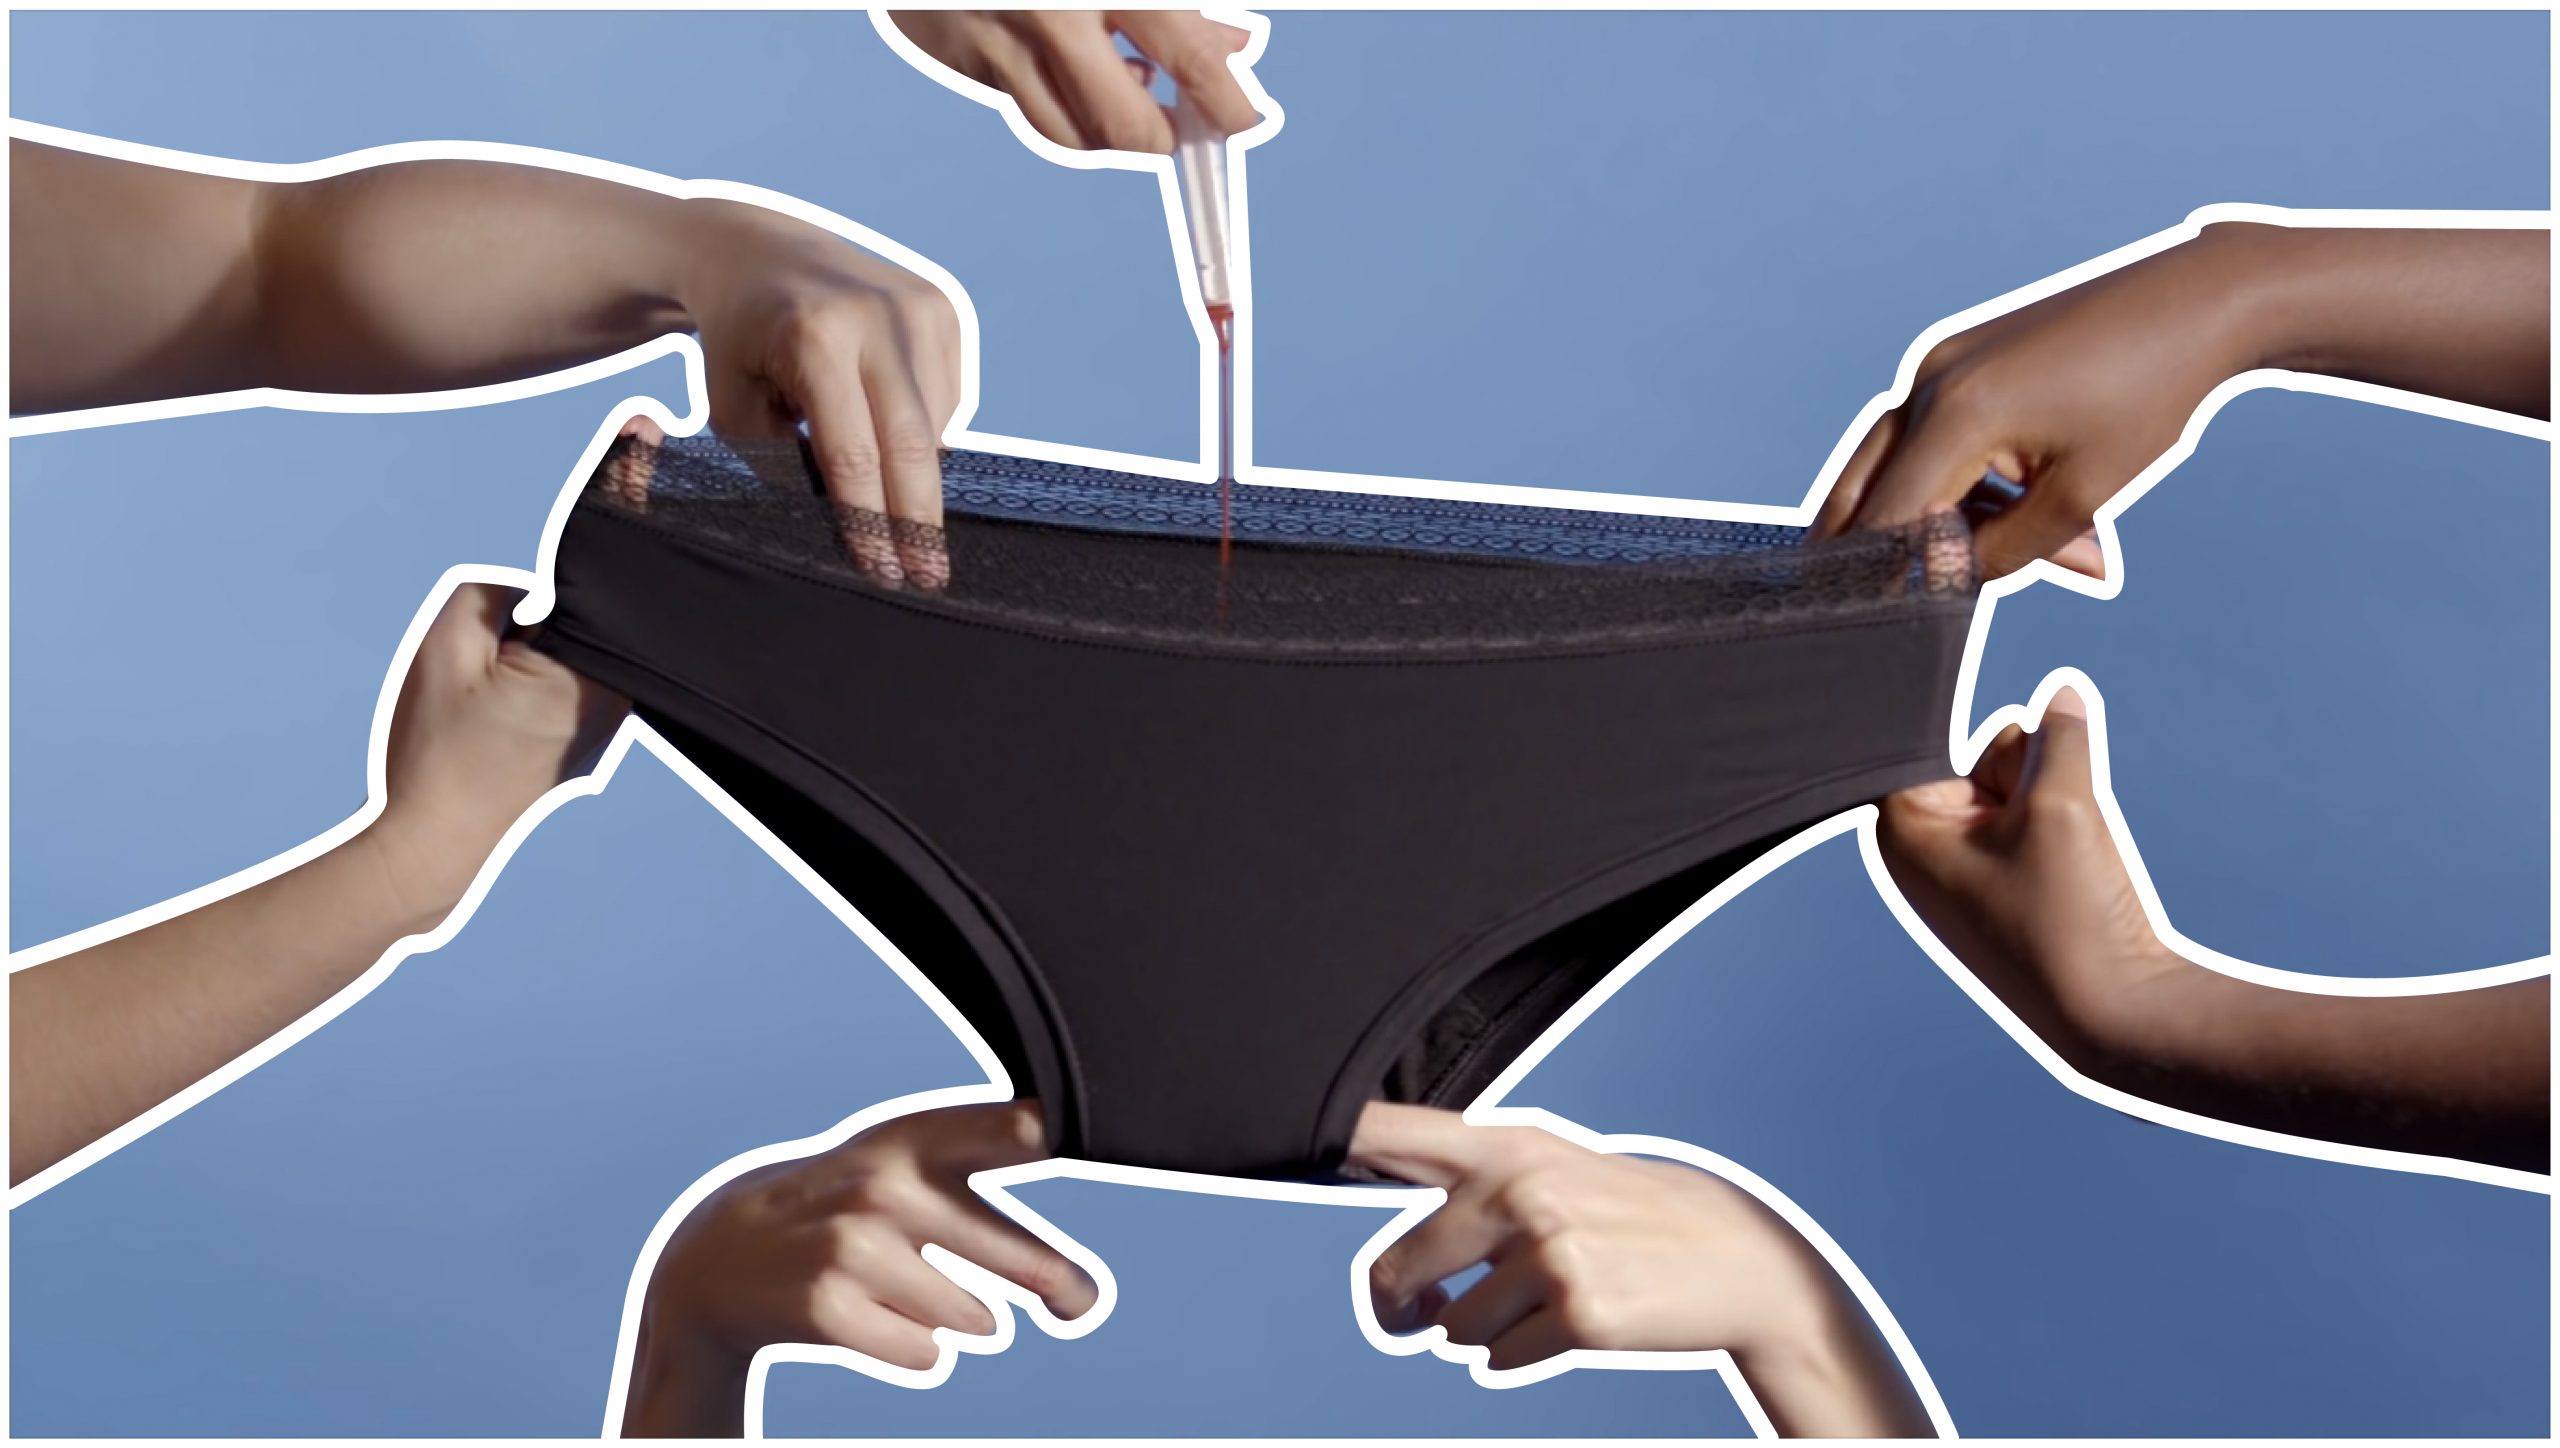 bragas menstruales, bragas que absorben la menstruacion, alternativa ecologica, vegana,compresas, cocoro